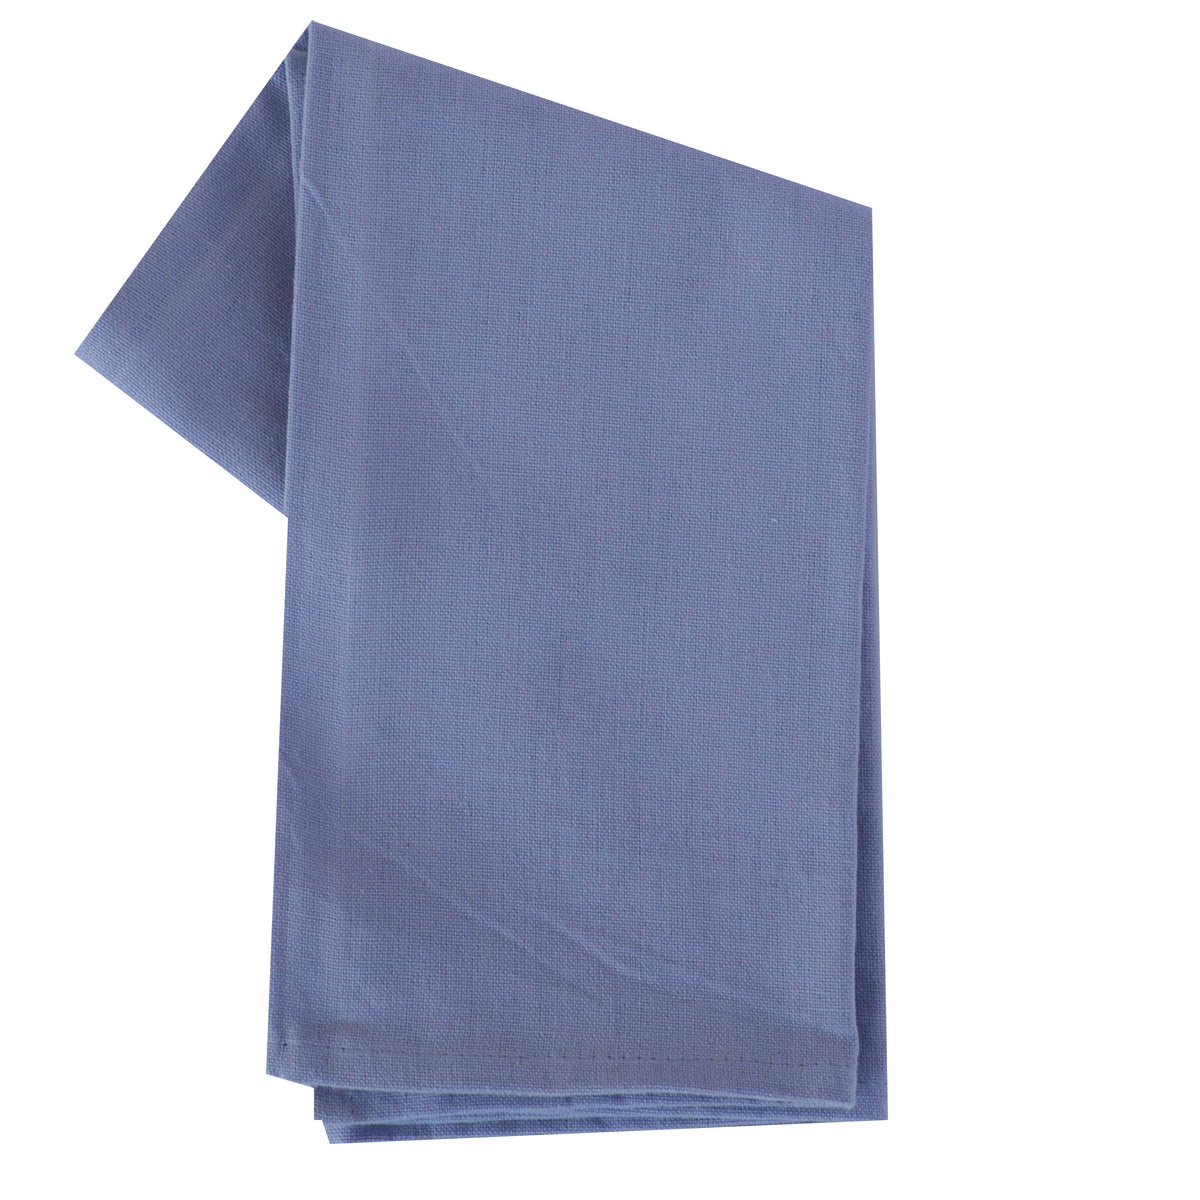 Spring Seasonal Towel Set of 4 - Solid Colors